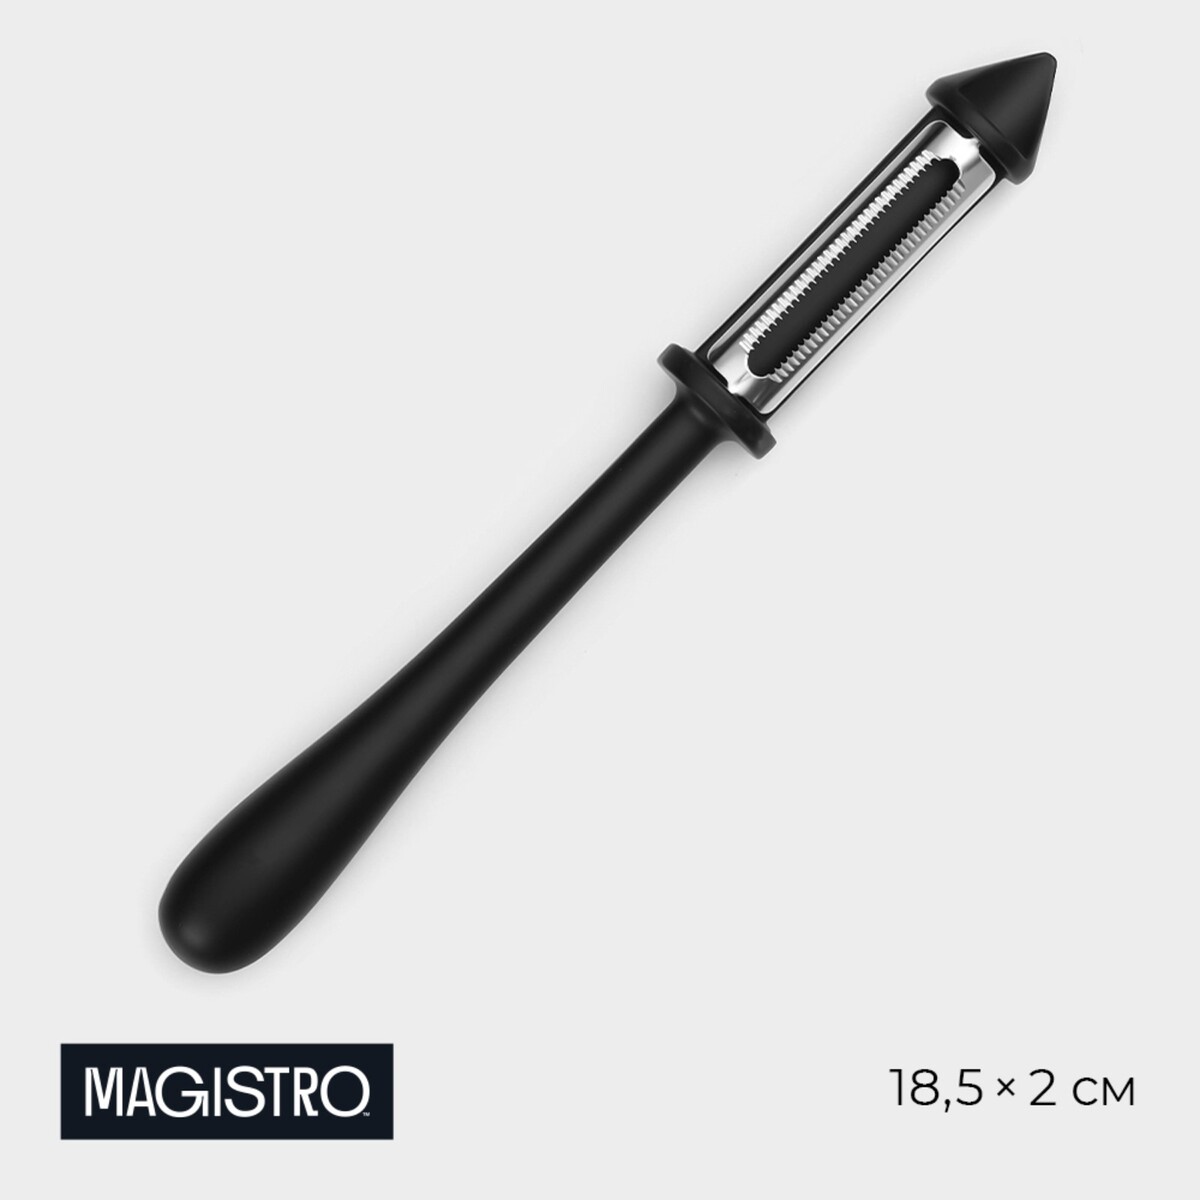 Овощечистка magistro vantablack, 18,5×2 см, многофункциональная, цвет черный